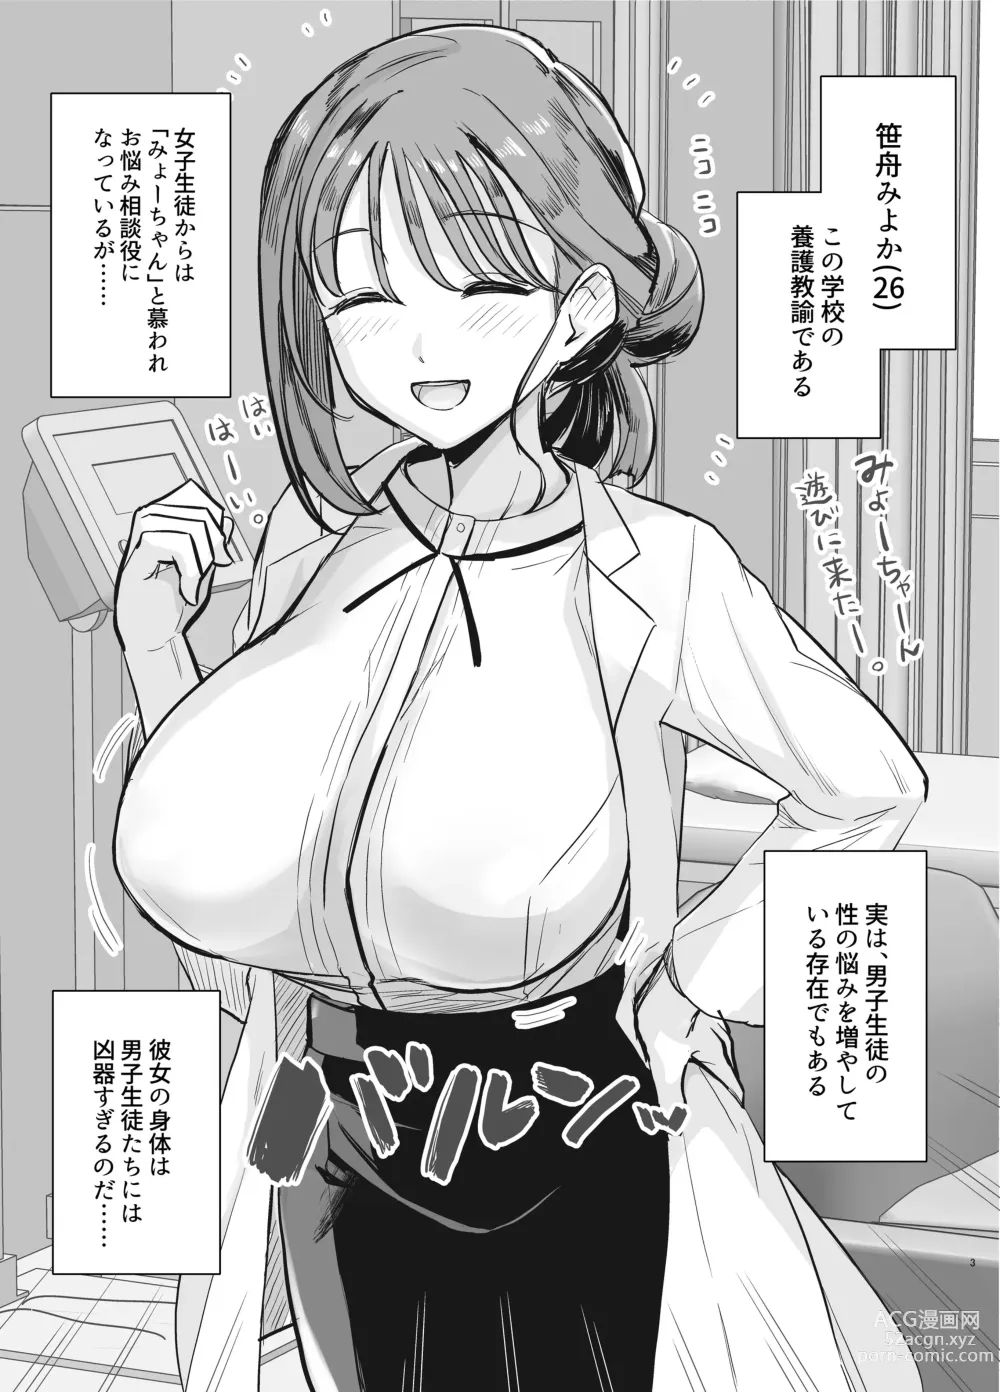 Page 2 of doujinshi Myo-chan Sensei Kaku Pakoriki